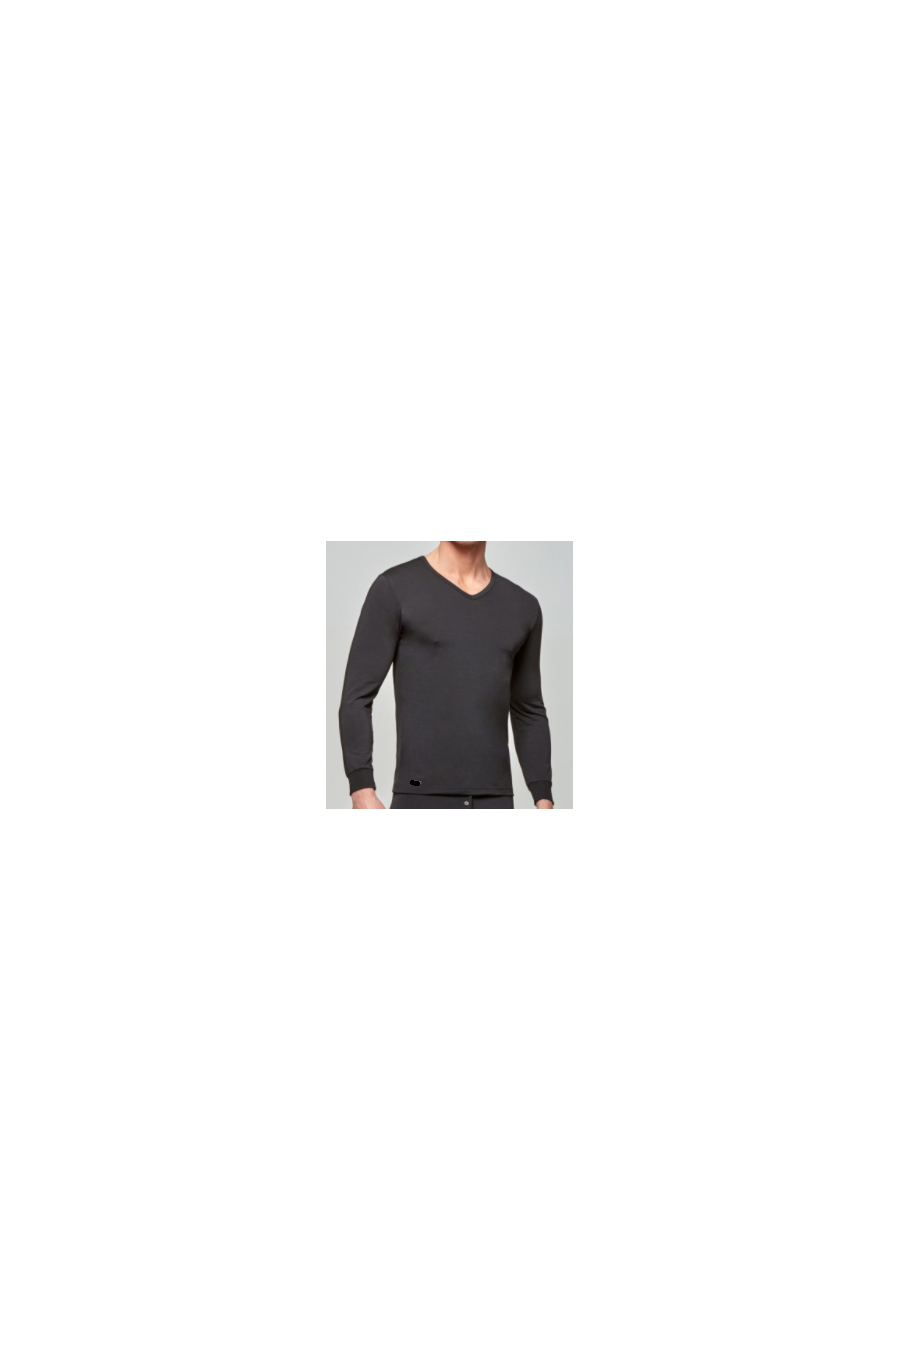 camiseta-termica-manga-larga-cuello-pico-negro